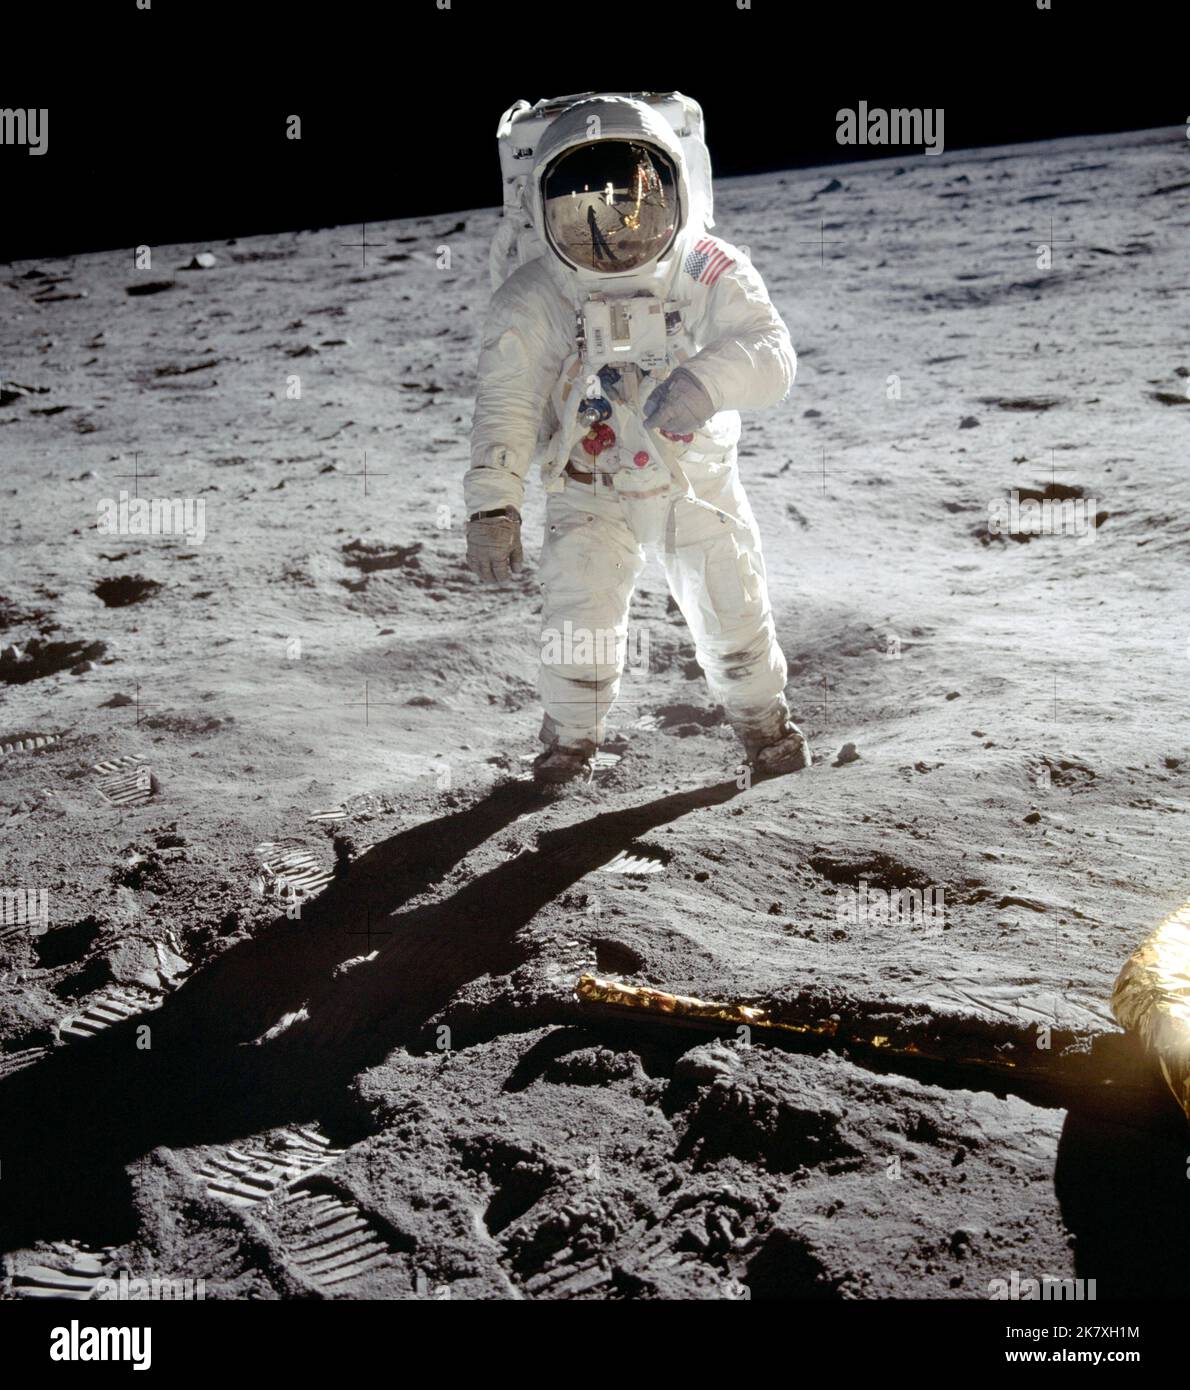 Astronaut Buzz Aldrin wandert während der Apollo 11-Mission auf der Oberfläche des Mondes in der Nähe des Fußes des Mondmoduls Eagle. Missionskommandant Neil Armstrong nahm dieses Foto mit einer 70mm-Mond-Oberflächenkamera auf. Während die Astronauten Armstrong und Aldrin die Mondregion Sea of Tranquility erkundeten, blieb der Astronaut Michael Collins bei den Kommandos- und Servicemodulen in der Mondumlaufbahn. Stockfoto